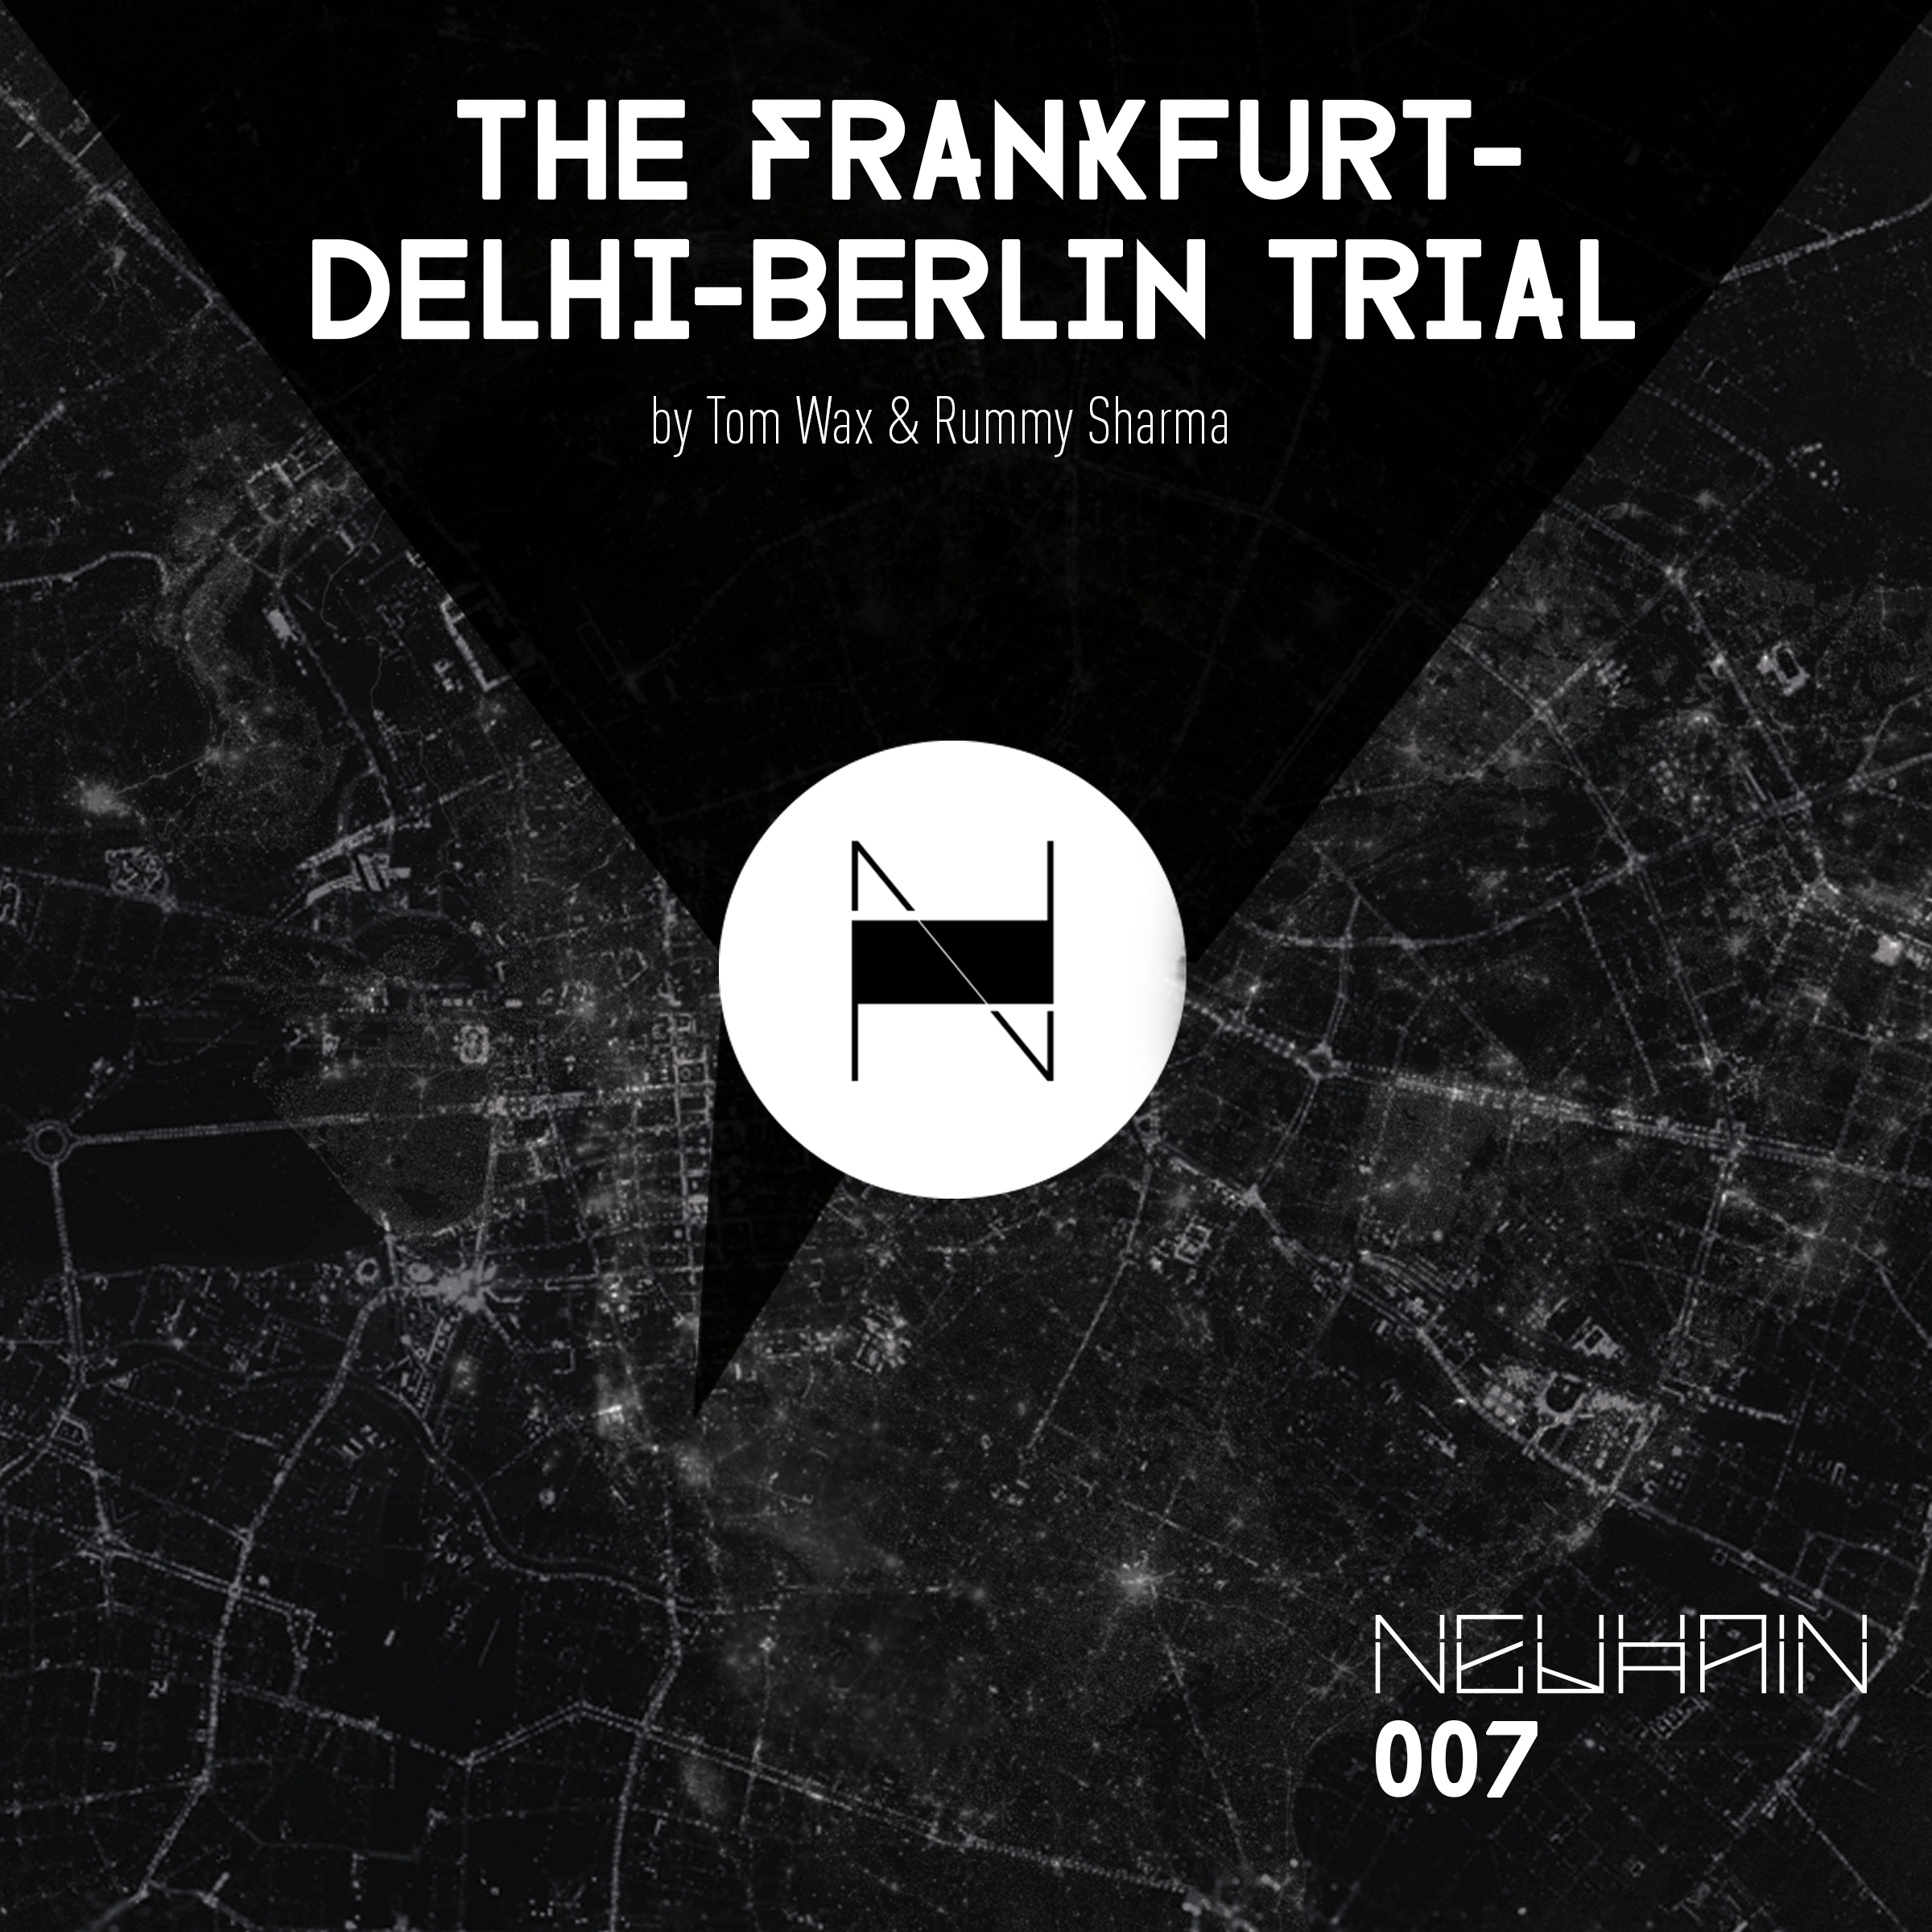 The Frankfurt - Delhi - Berlin Trail